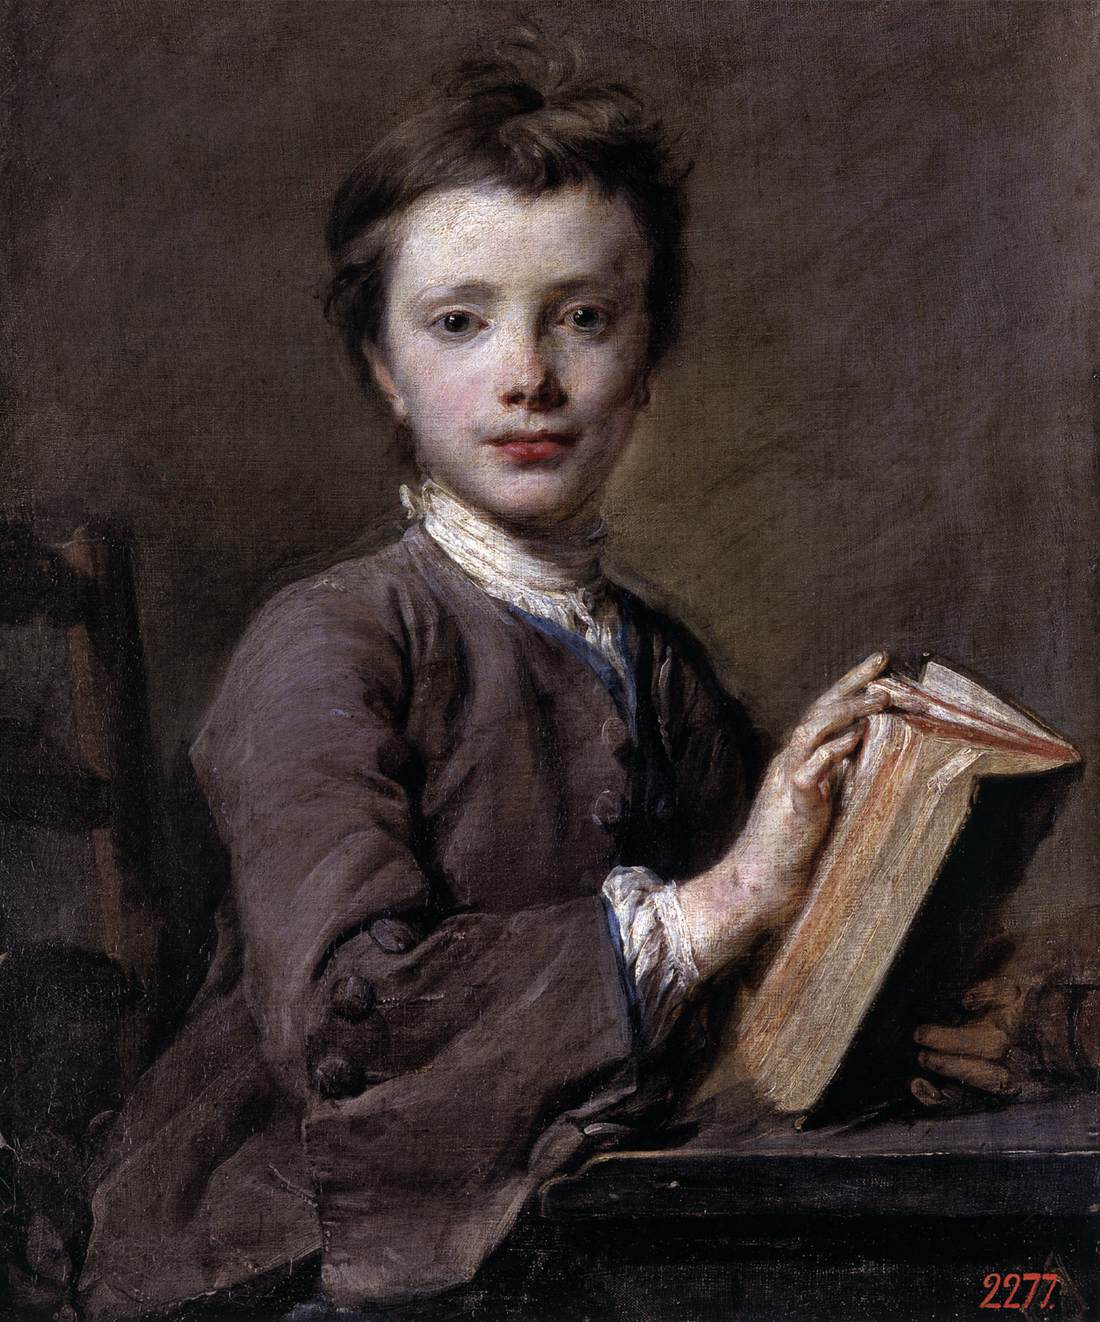 Retrato de um menino com um livro